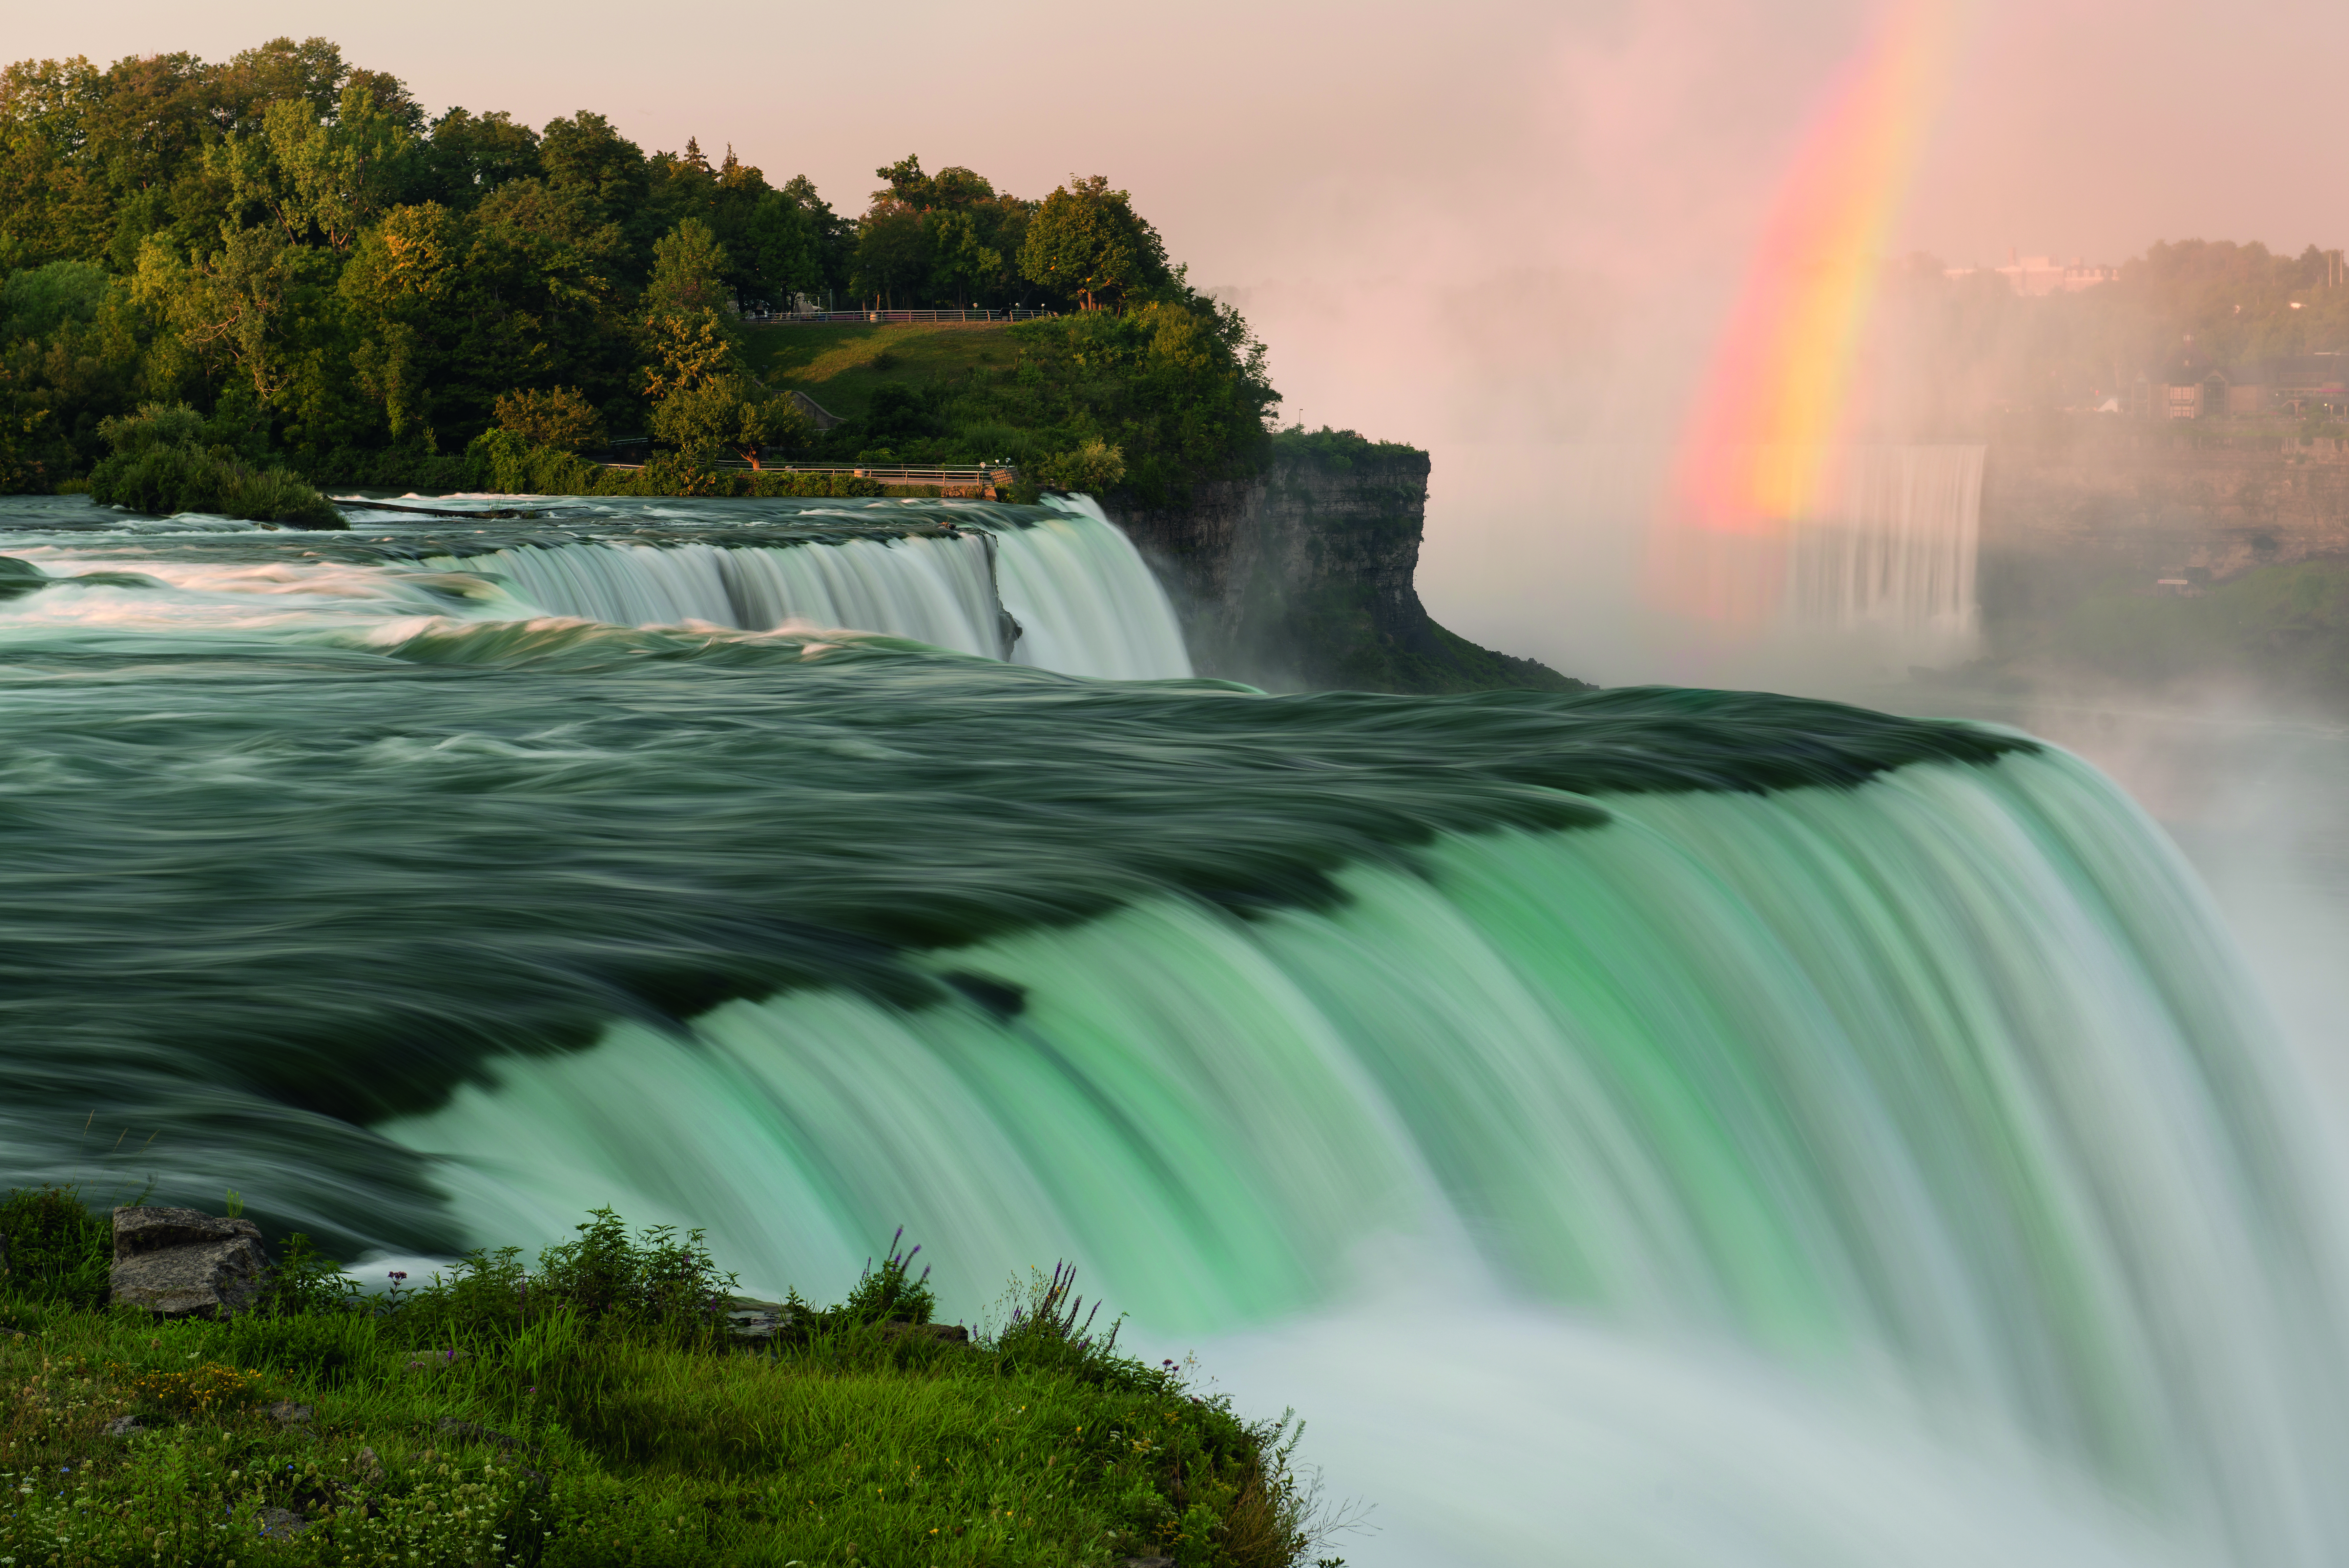 Les chutes du Niagara